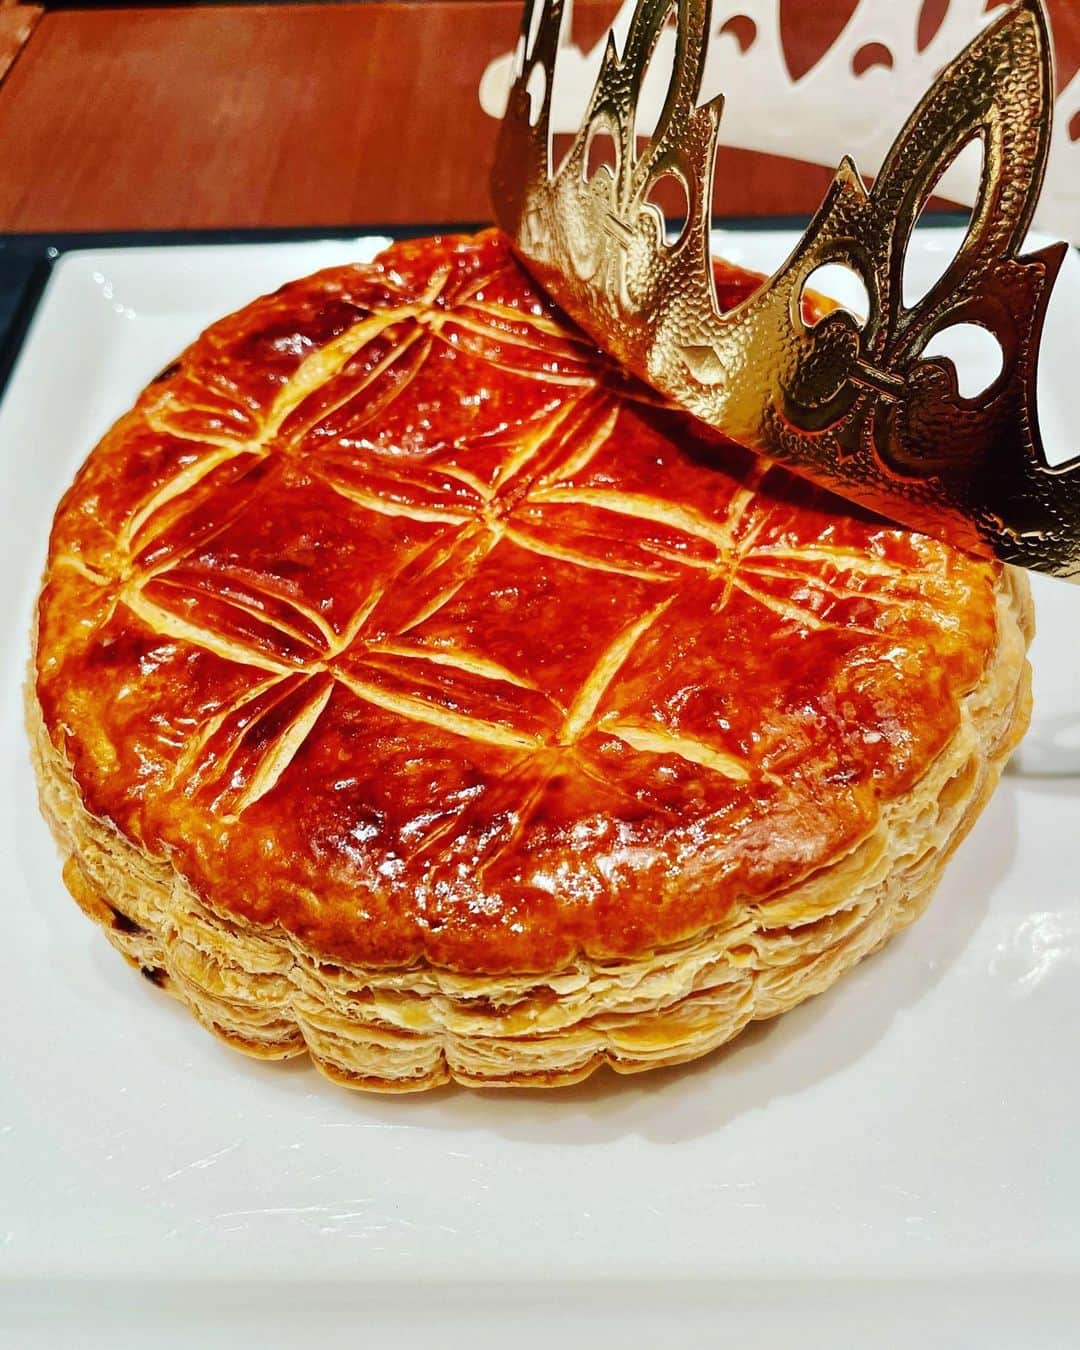 永吉明日香のインスタグラム：「新年を祝う、フランス伝統の #ガレットデロワ を初めて味わいました🥮❤️ サクサクのパイ生地とアーモンドクリームのお菓子で、めちゃくちゃおいしかったーーー😋 仕込まれた陶器製の"フェーブ"が、食べたガレットデロワの中から出てきた人が、王冠をかぶる👑っていう楽しみ方☺️ フェーブが当たったので、王冠かぶって食べ続けました笑 こんなに楽しい伝統、日本にも広まればいいのに〜！！！ 楽しいおいしい時間でした☕️🥮 #目つぶっちゃった写真載せとくね#口元にお菓子ついてるし🤨」